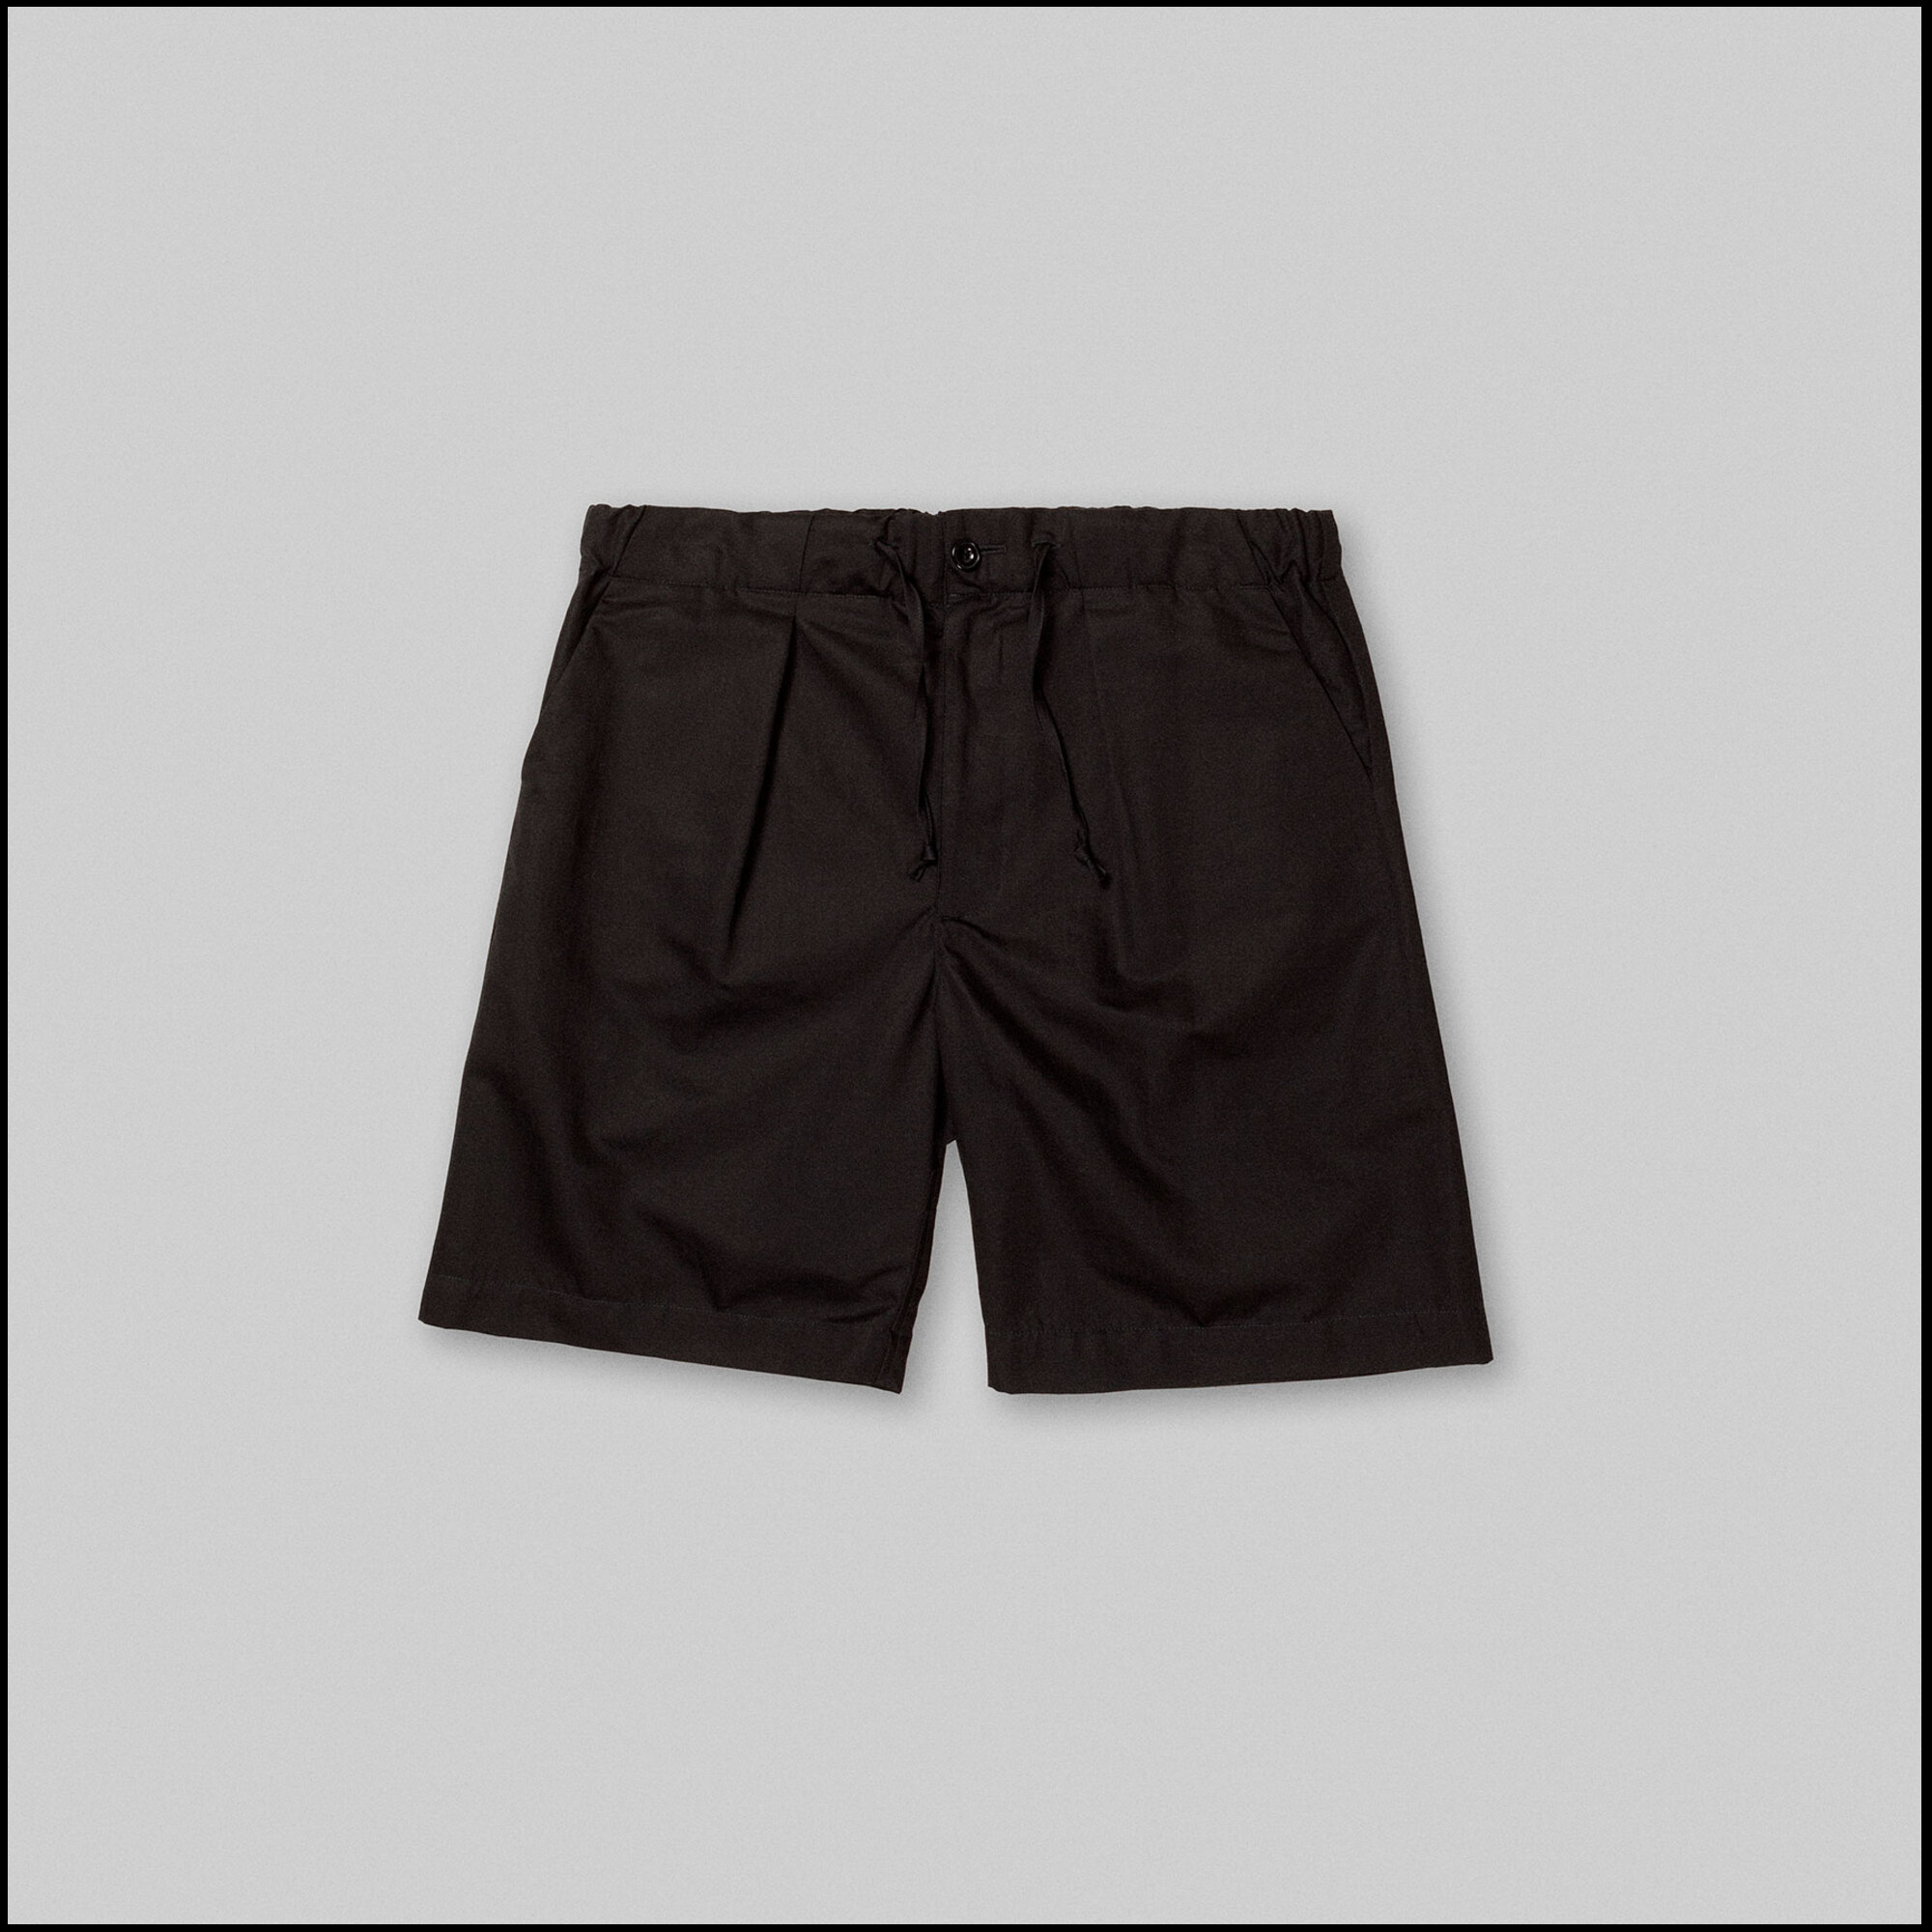 TERRA shorts by Arpenteur in Black taffetas color